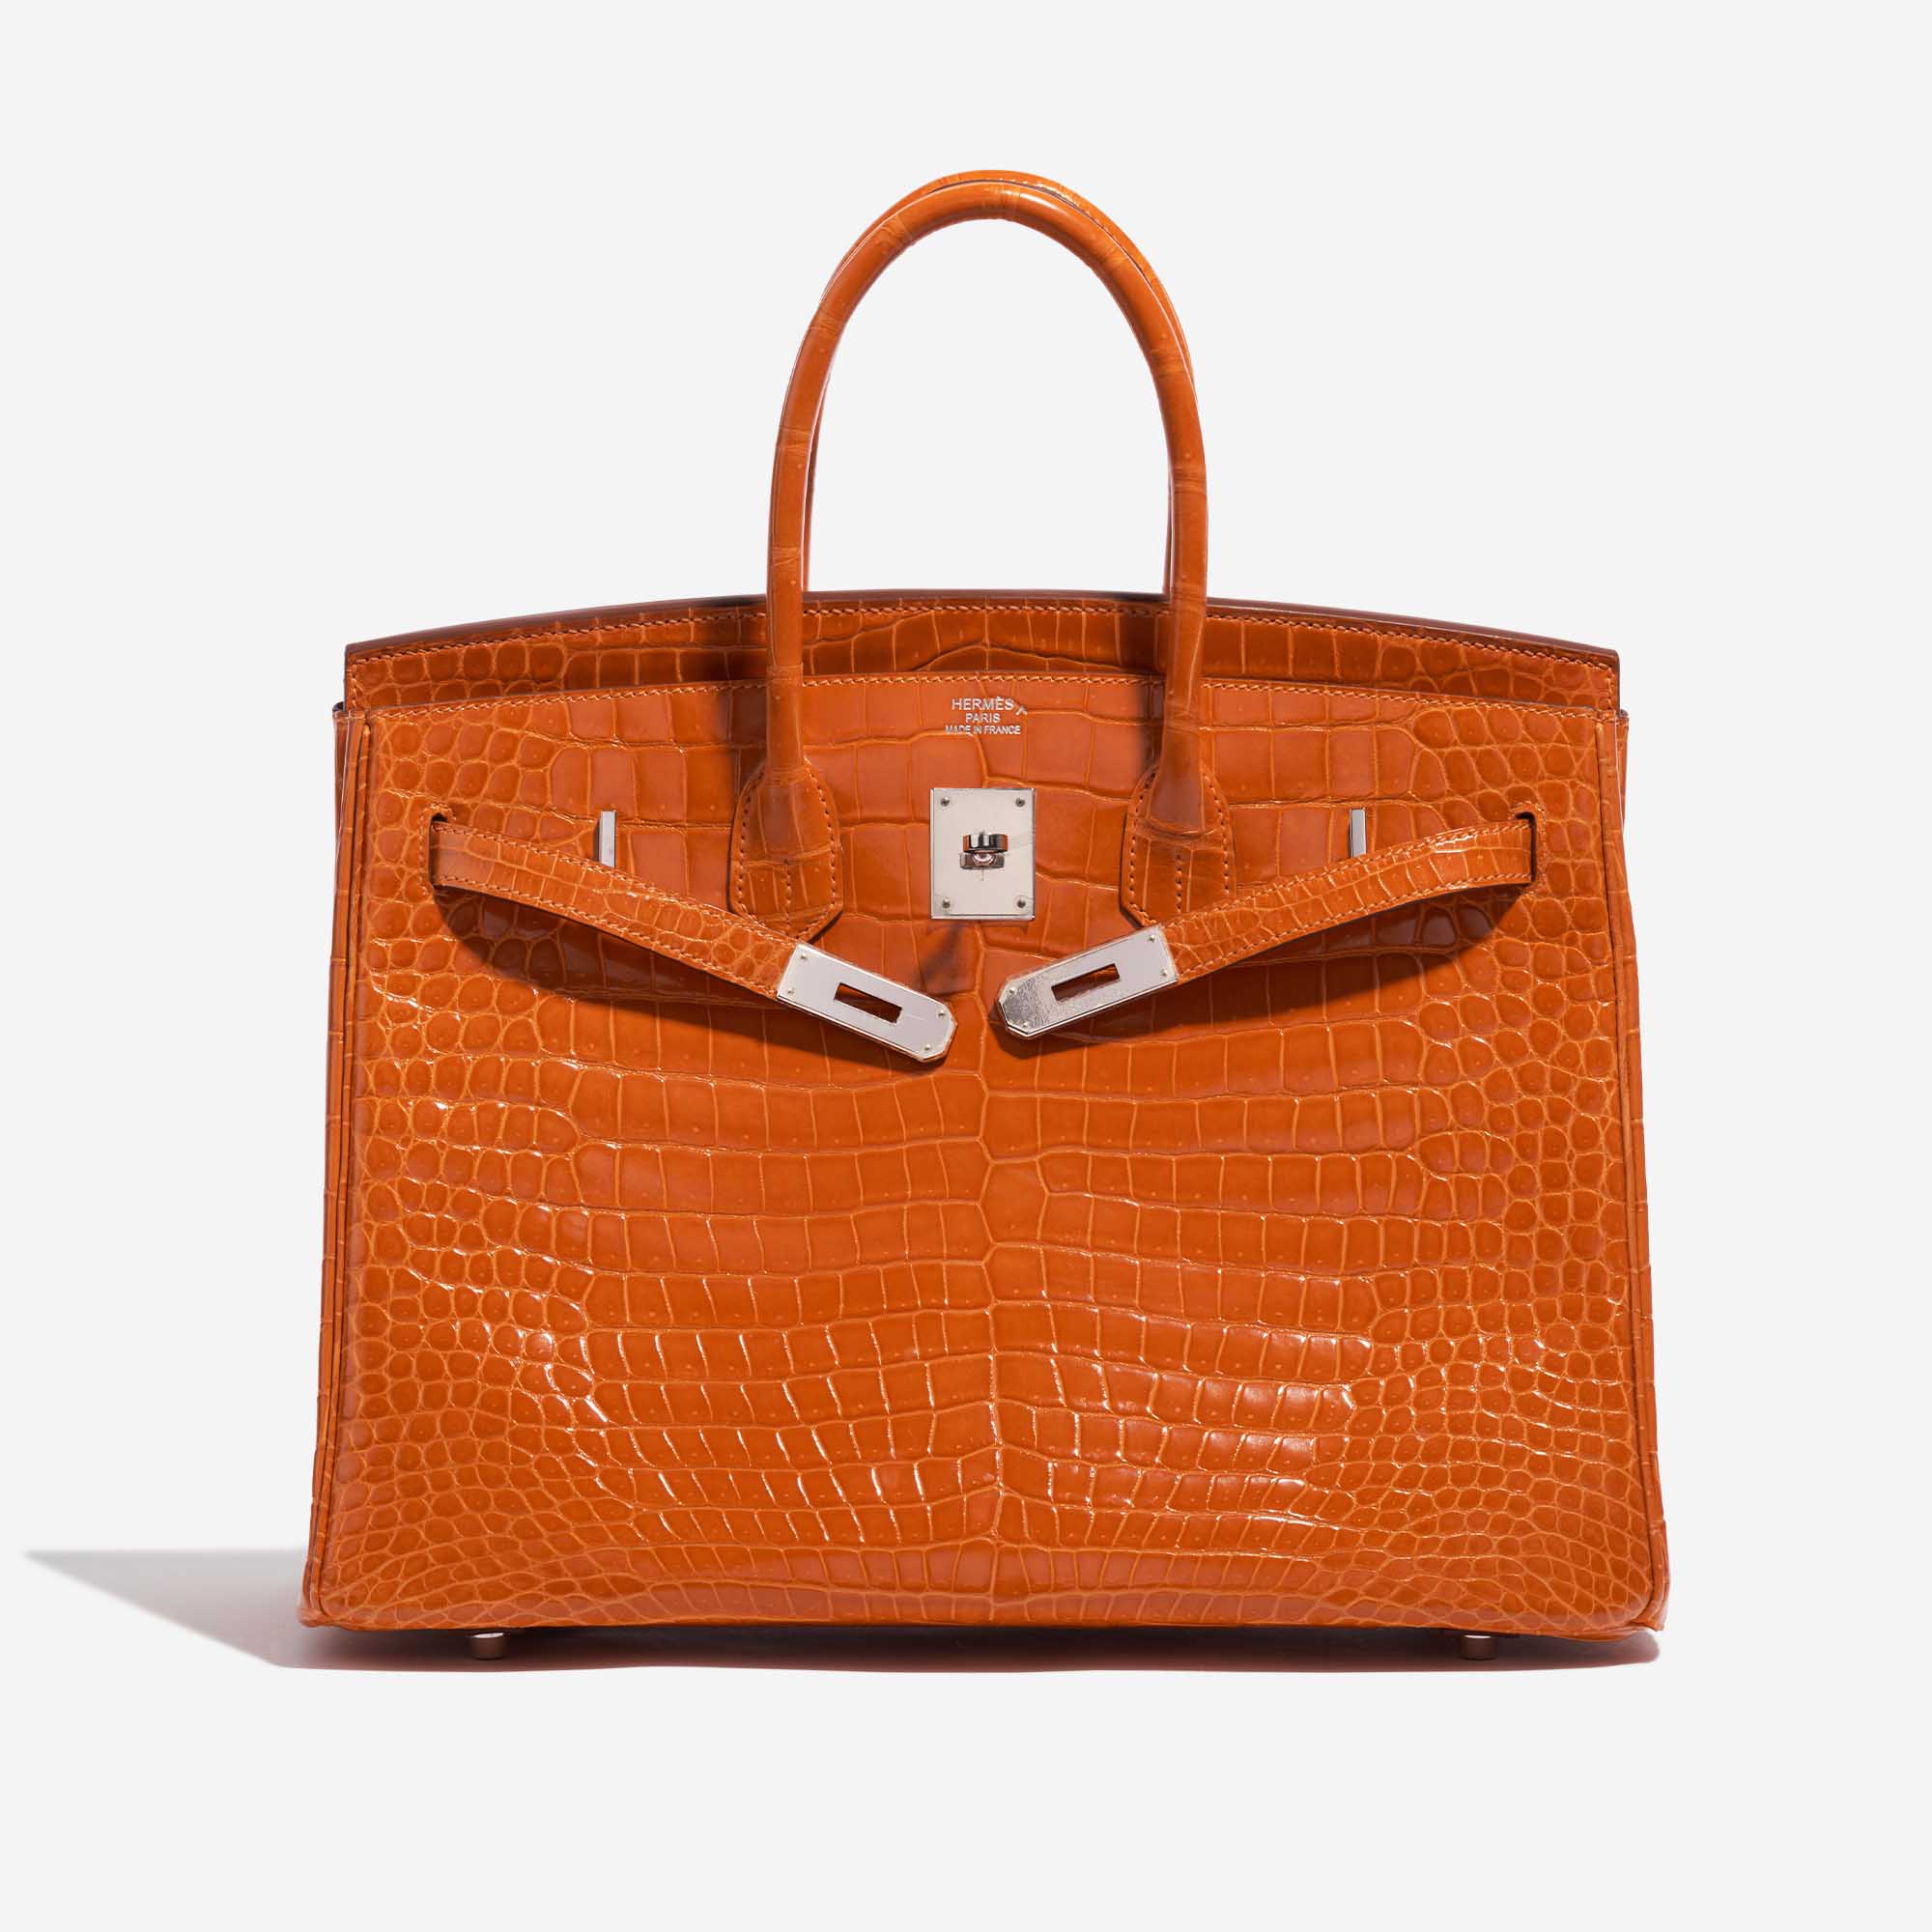 Pre-owned Hermès Tasche Birkin 35 Porosus Crocodile Pain d'épice Orange Front Open | Verkaufen Sie Ihre Designer-Tasche auf Saclab.com